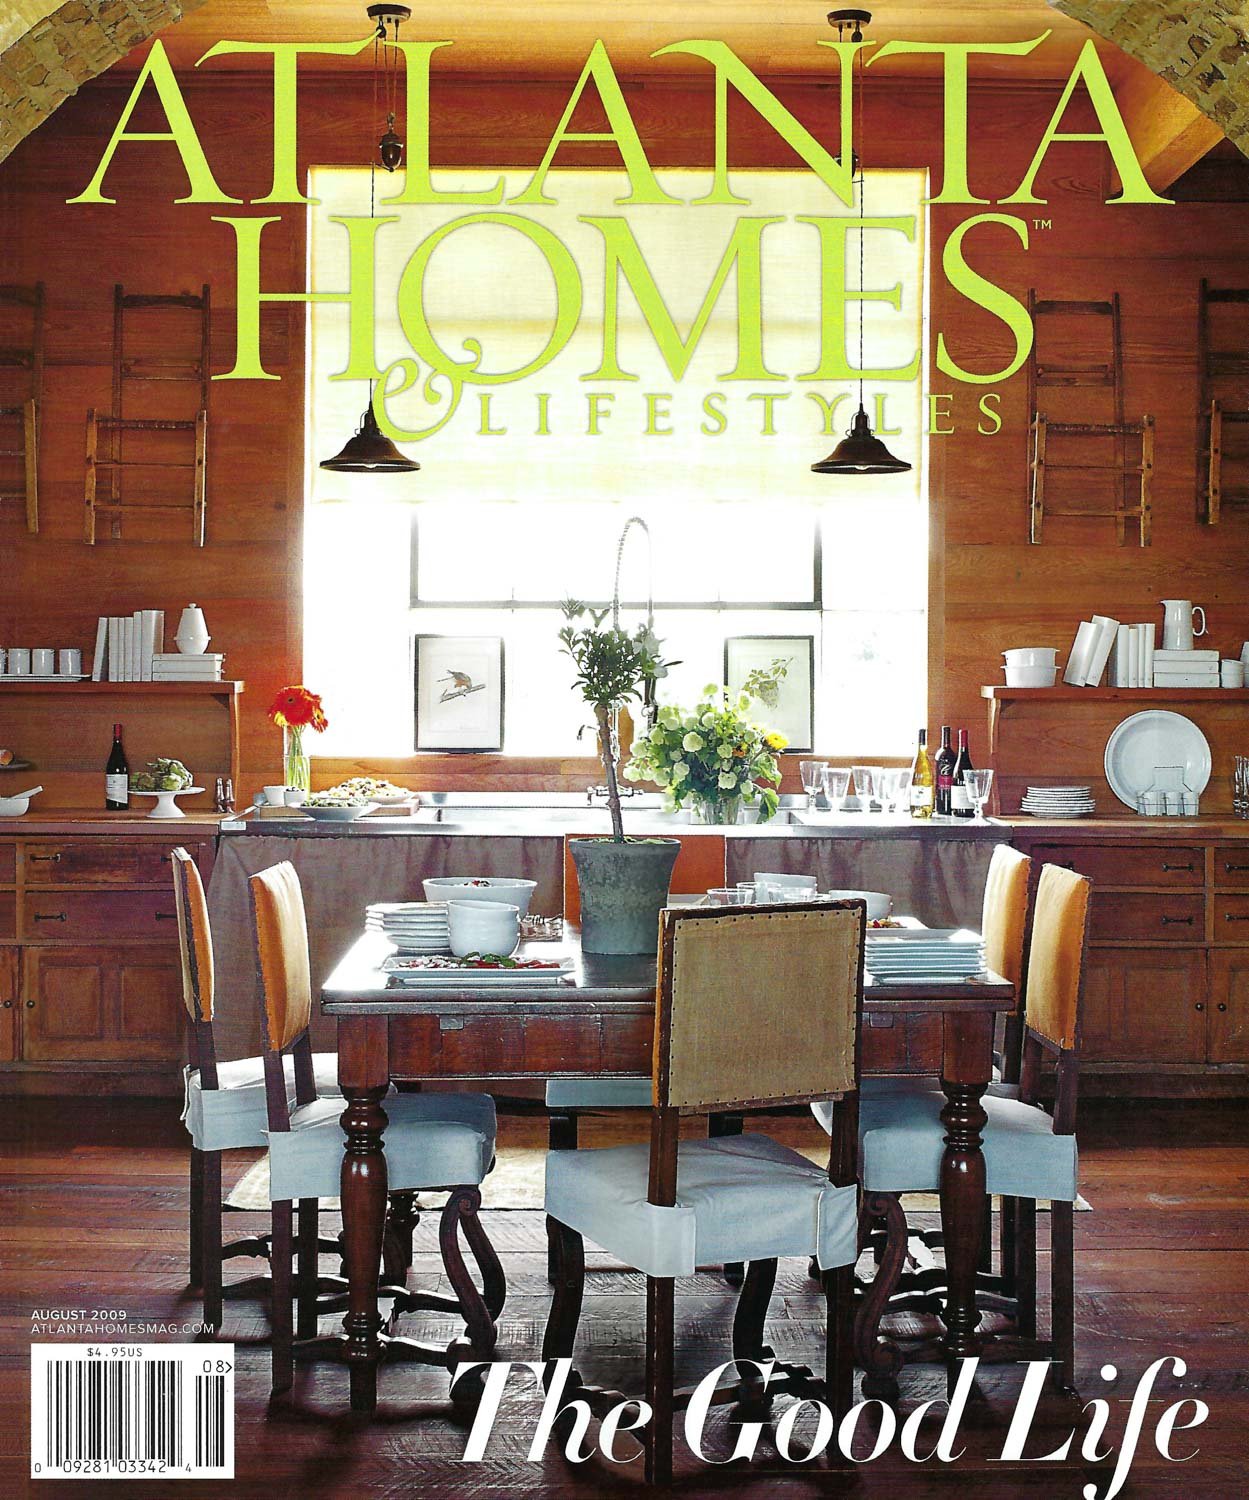 Robin-Burnett-Design-Atlanta-Homes&Lifestyles-2009-w.jpg